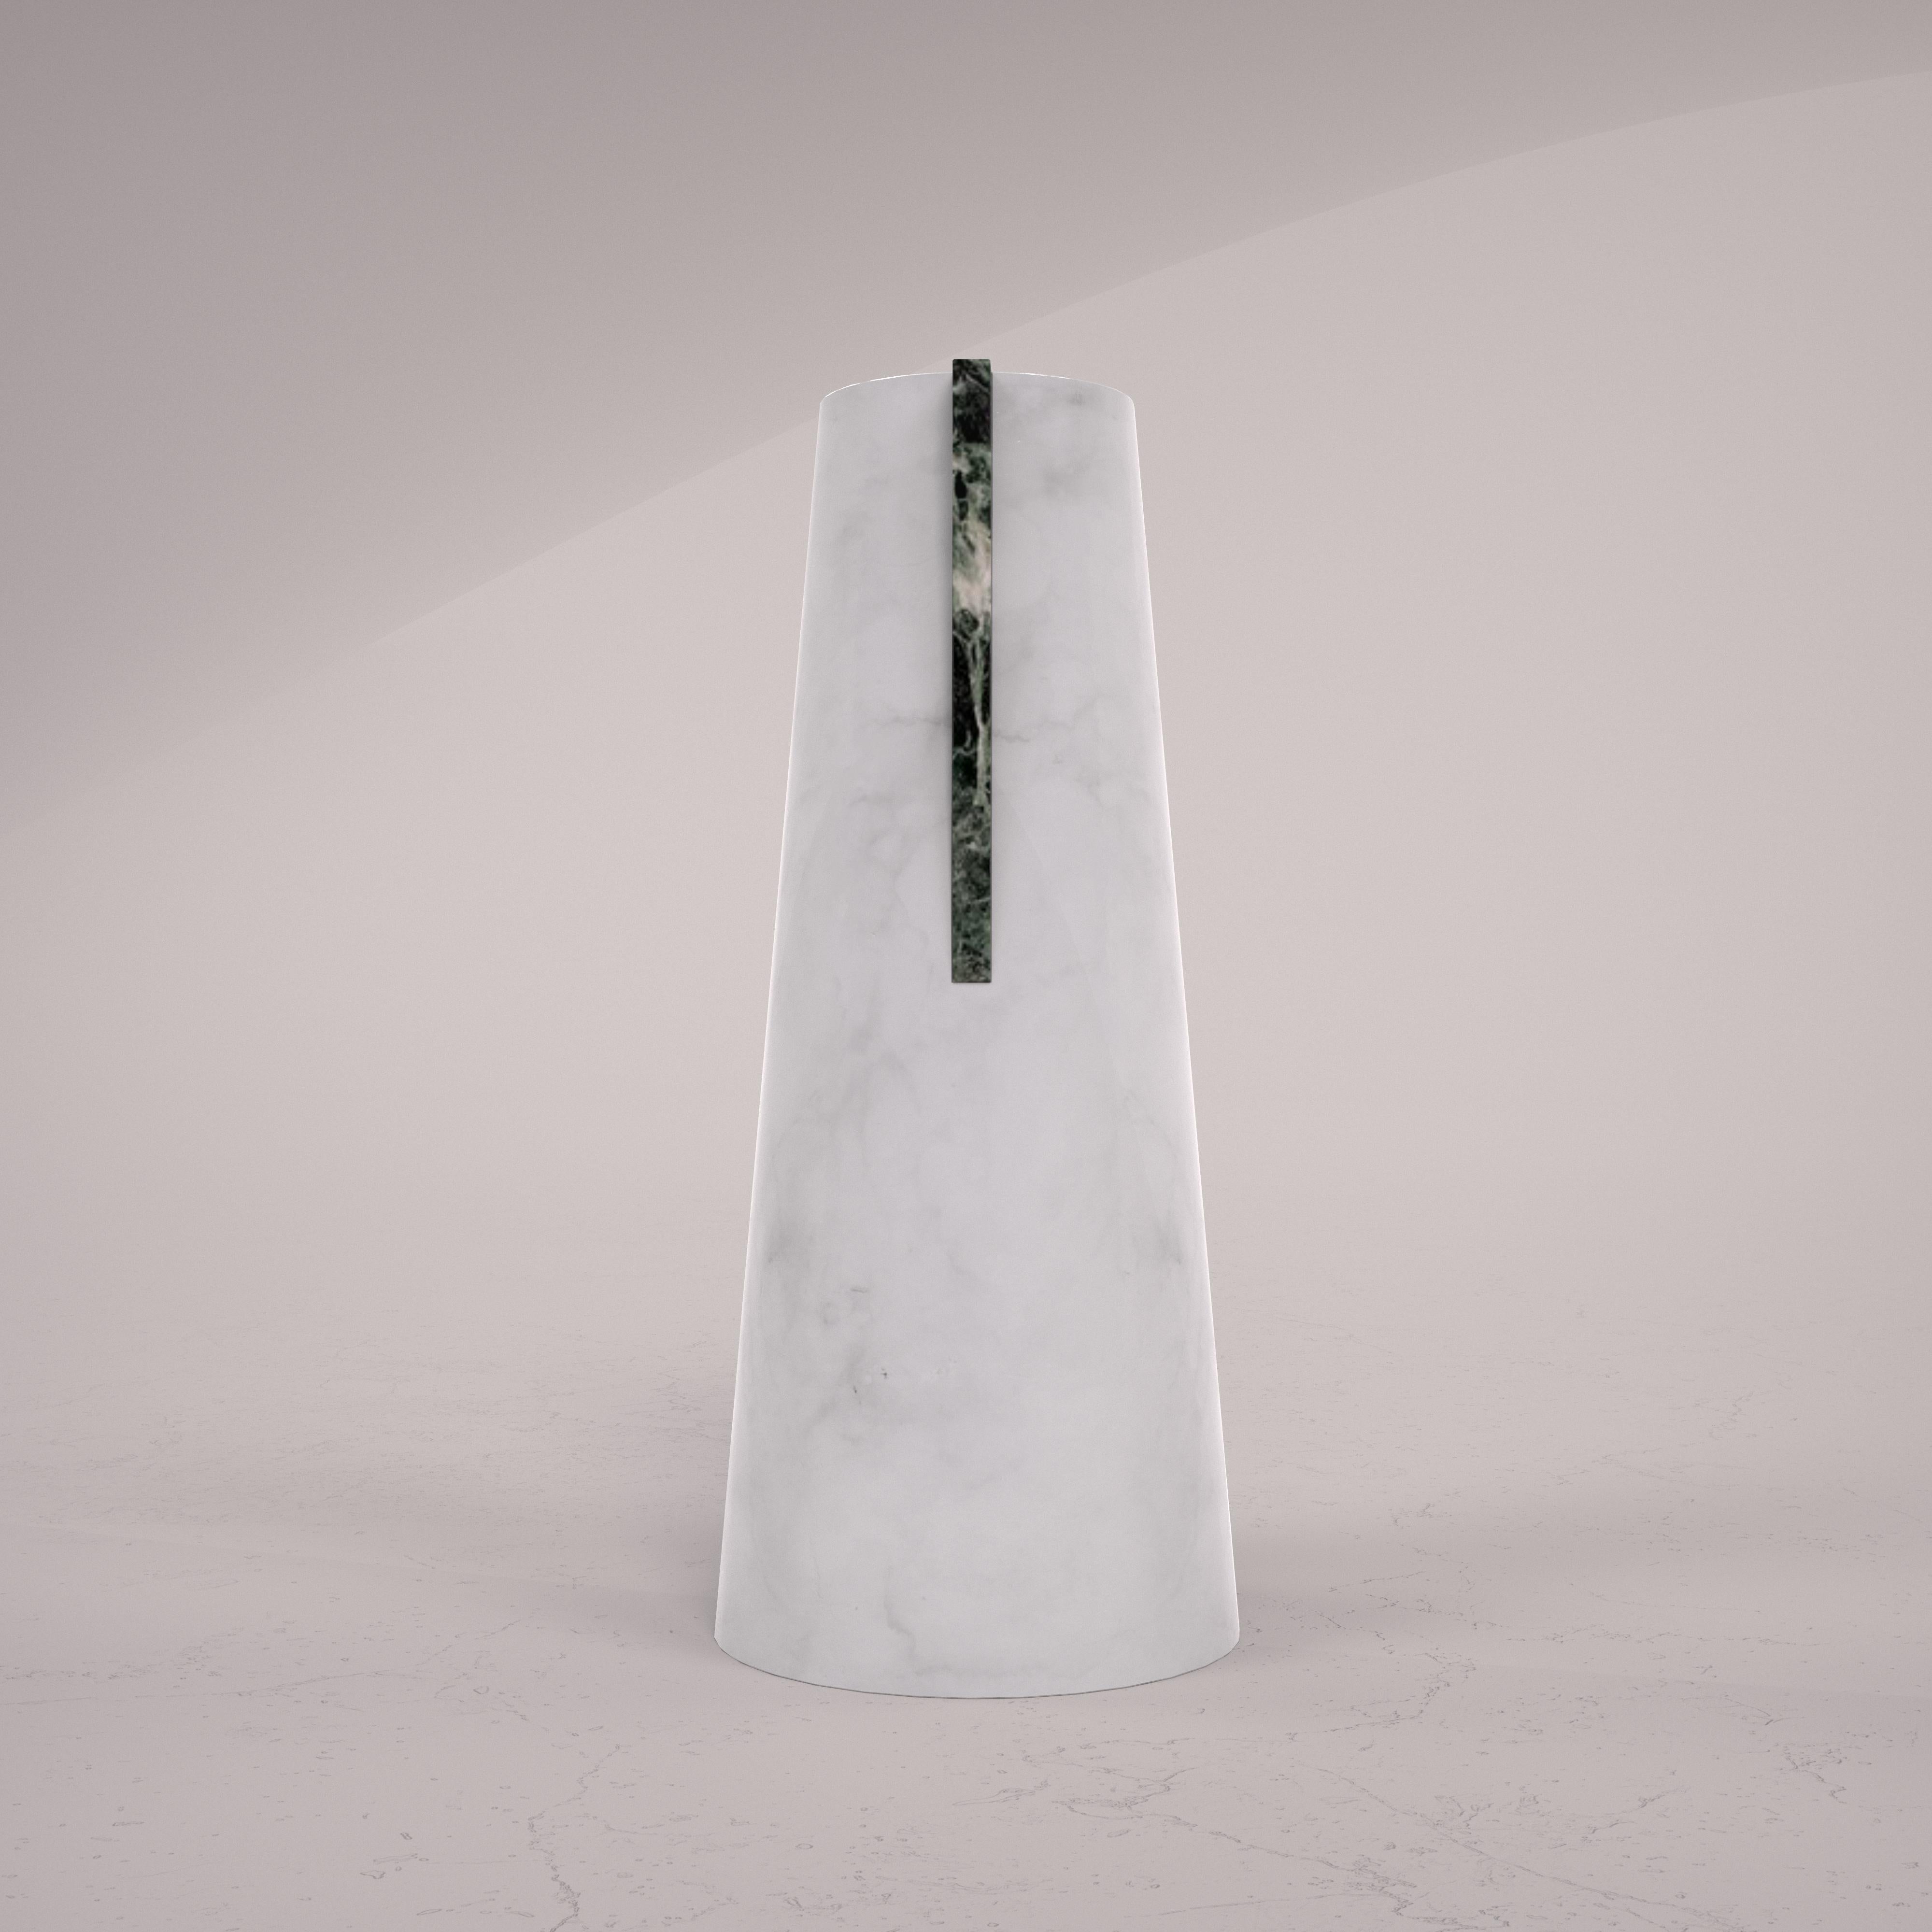 Vase en marbre blanc de Carrare sablé avec bouchon en marbre Verde Alpi poli, fabriqué à la main en Italie. L'œuvre incarne tout le savoir-faire et la tradition de fabrication de Bassano del Grappa, en Vénétie.

Différents types de marbre et de